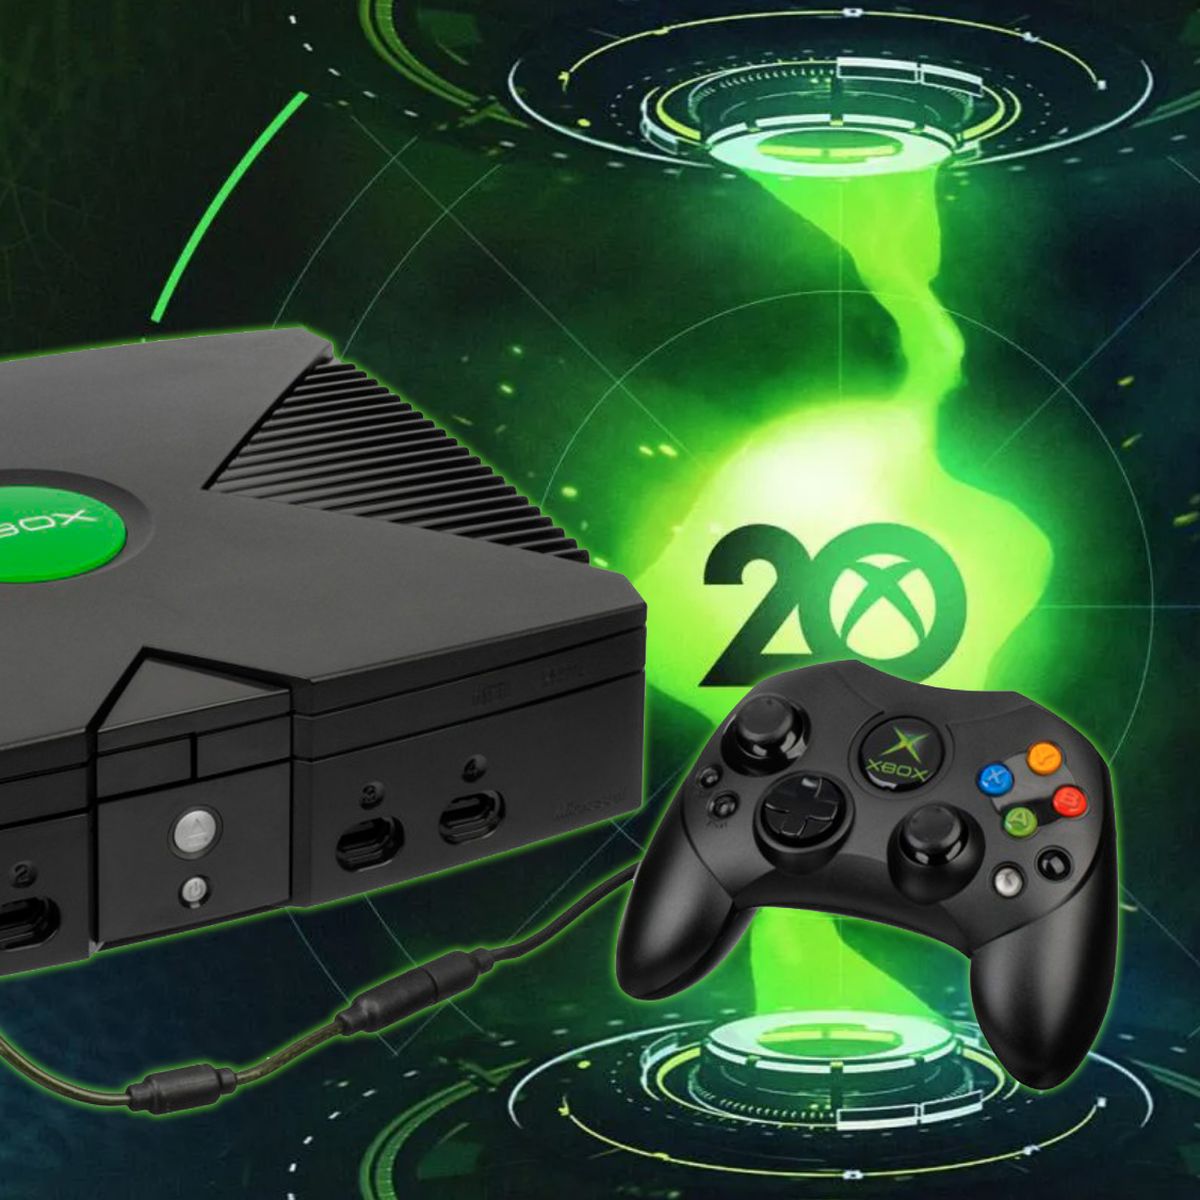 El mando de la Xbox 360 podría ser rediseñado